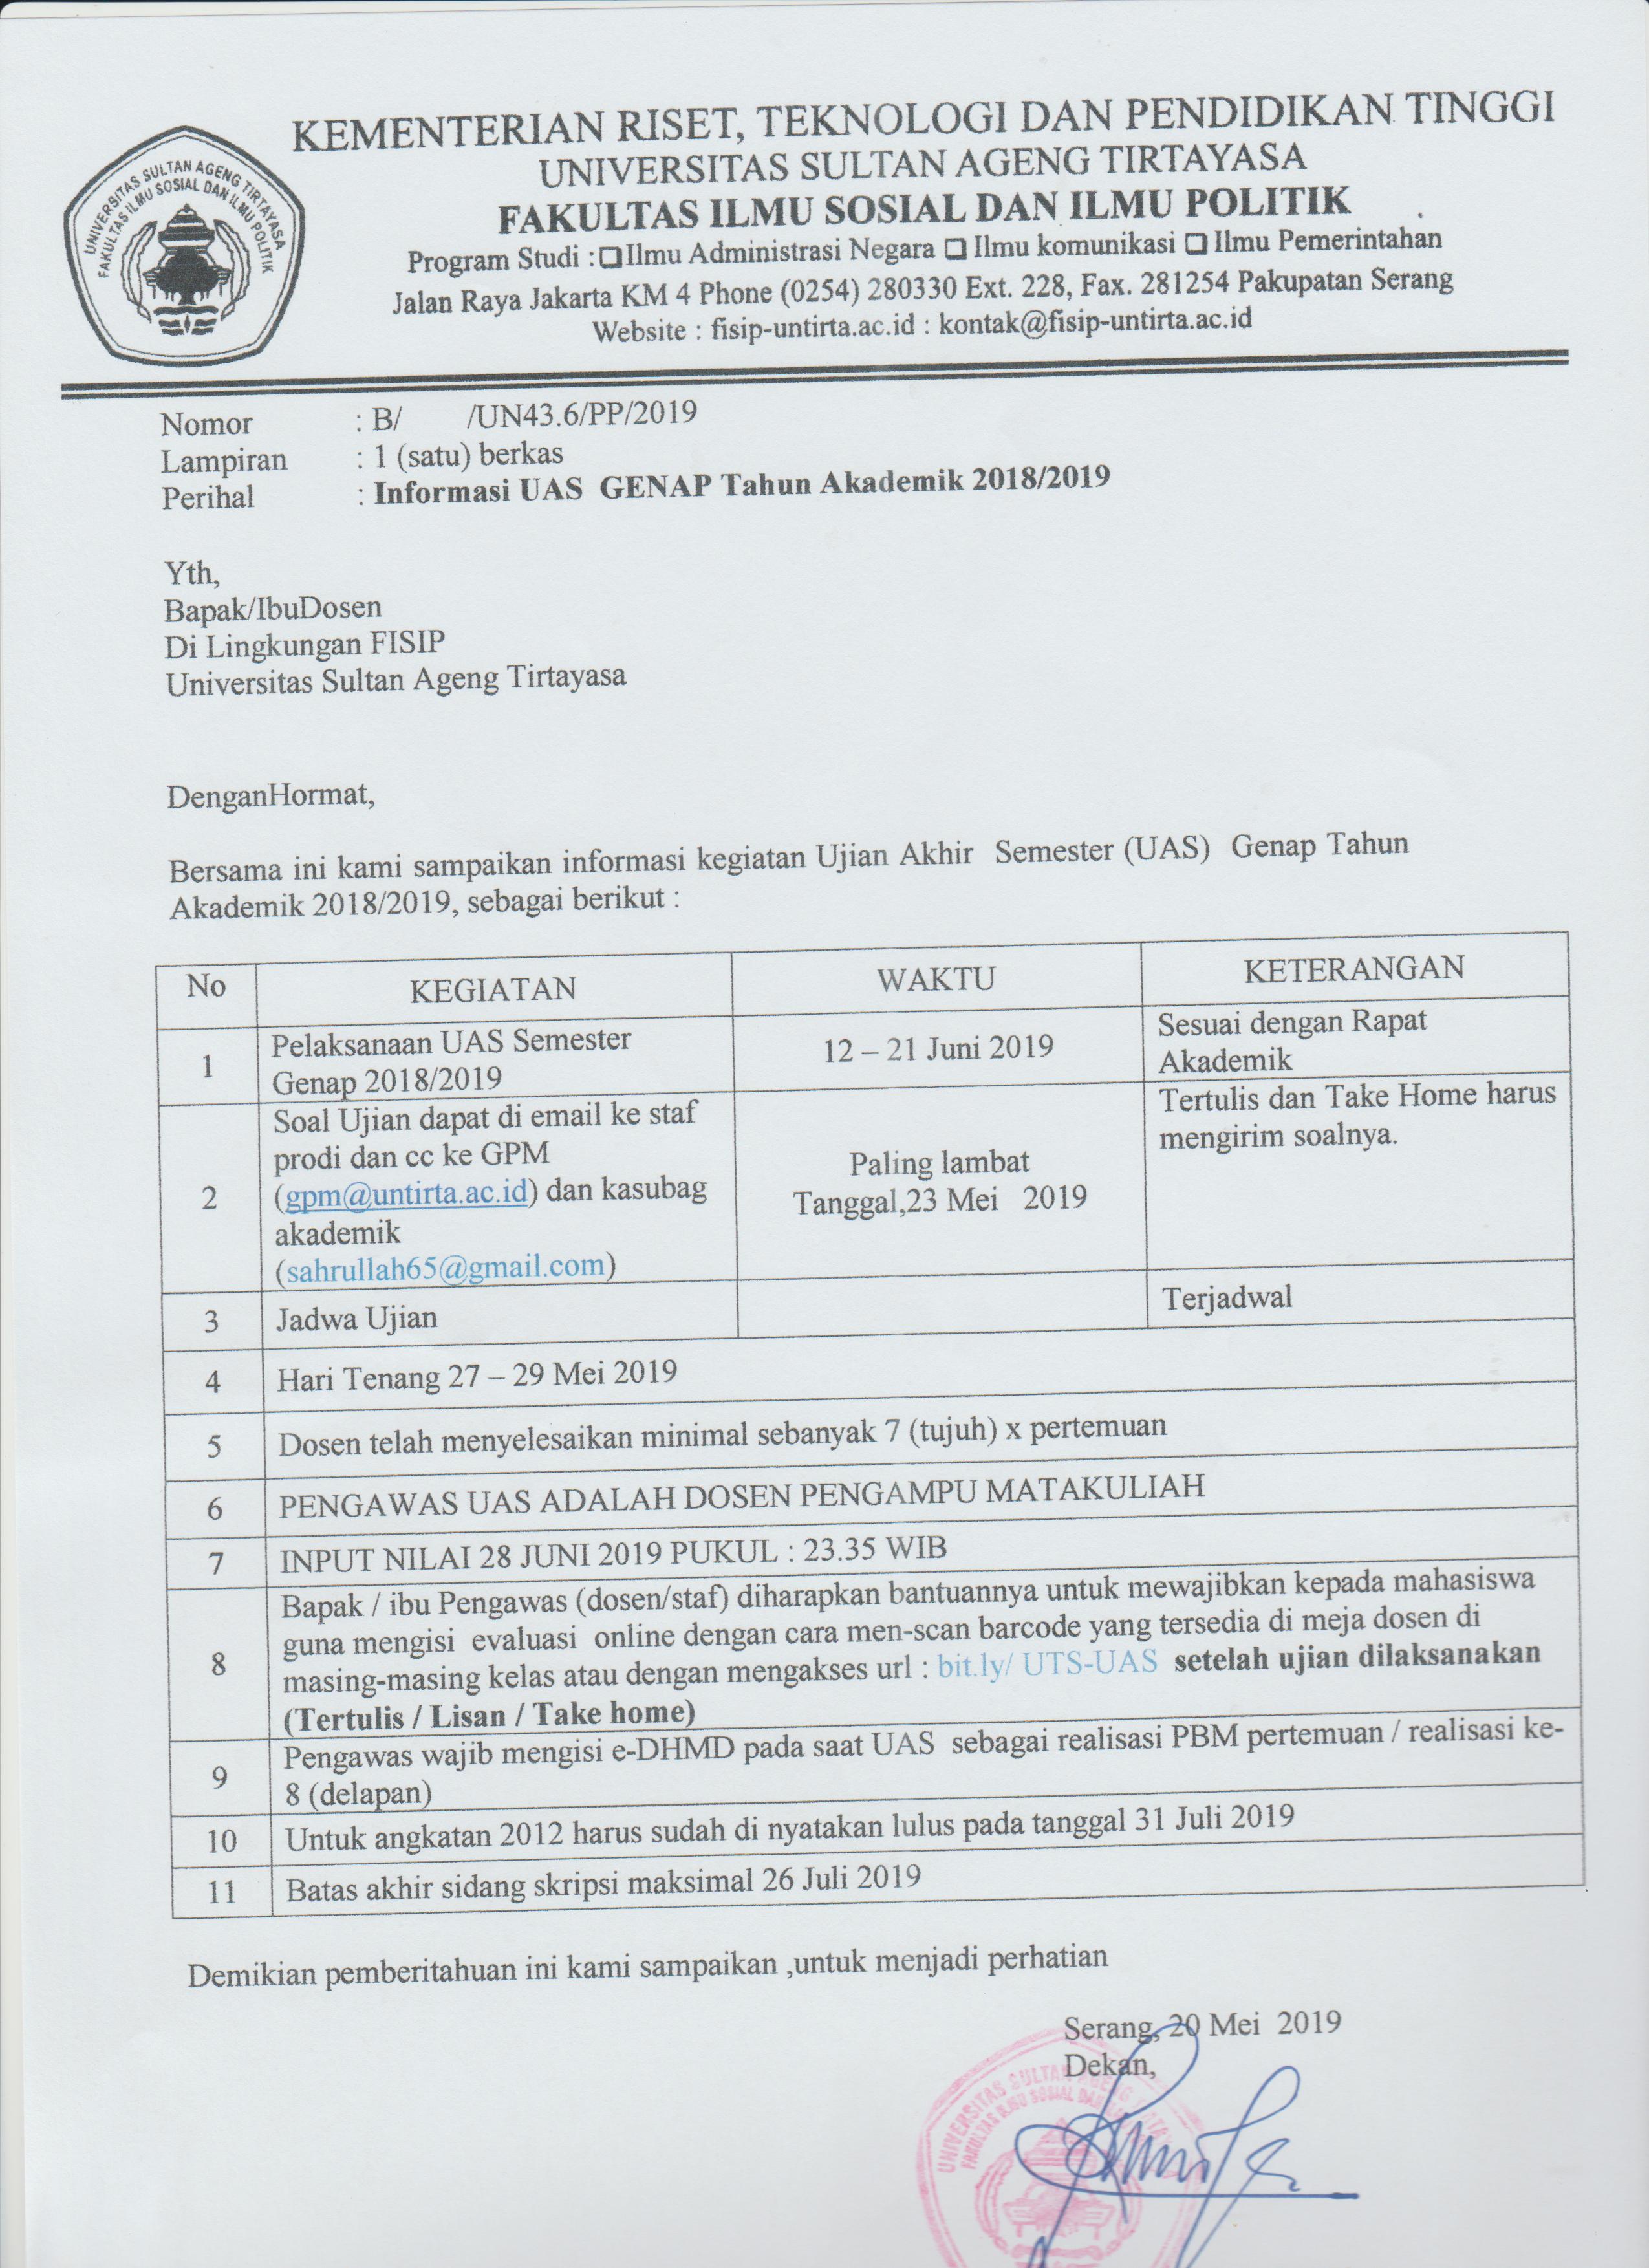 Informasi UAS GENAP Tahun Akademik 2018/2019